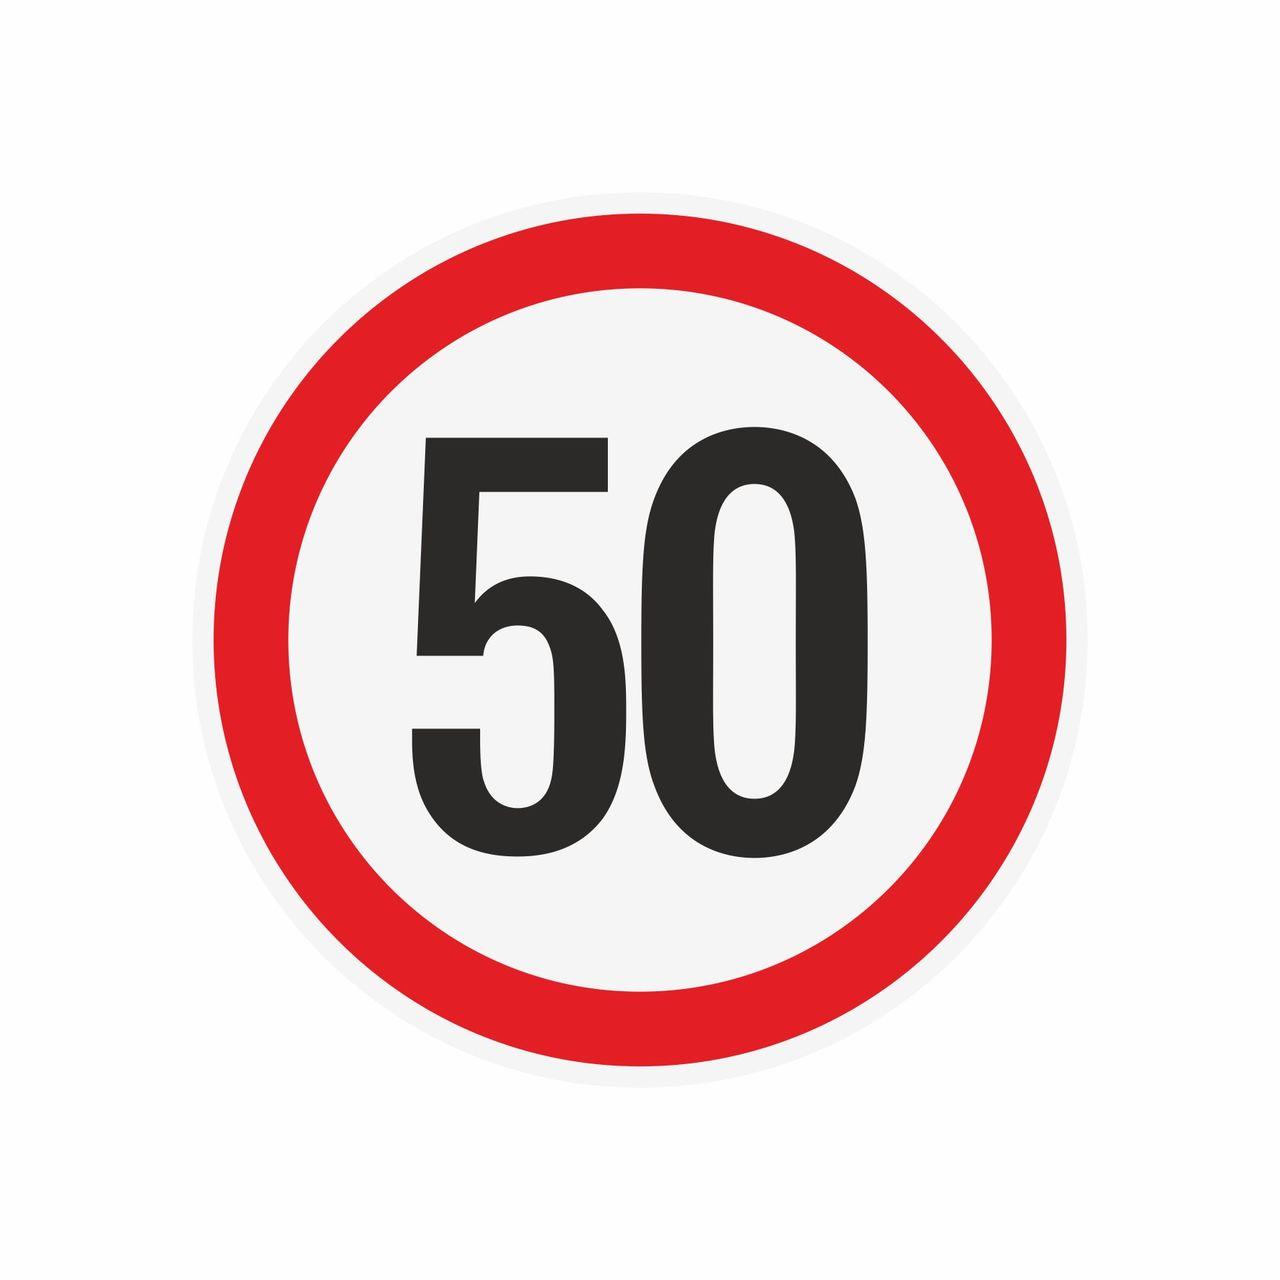 Наклейка ограничения скорости "50" для автотранспорта, 210х210 мм